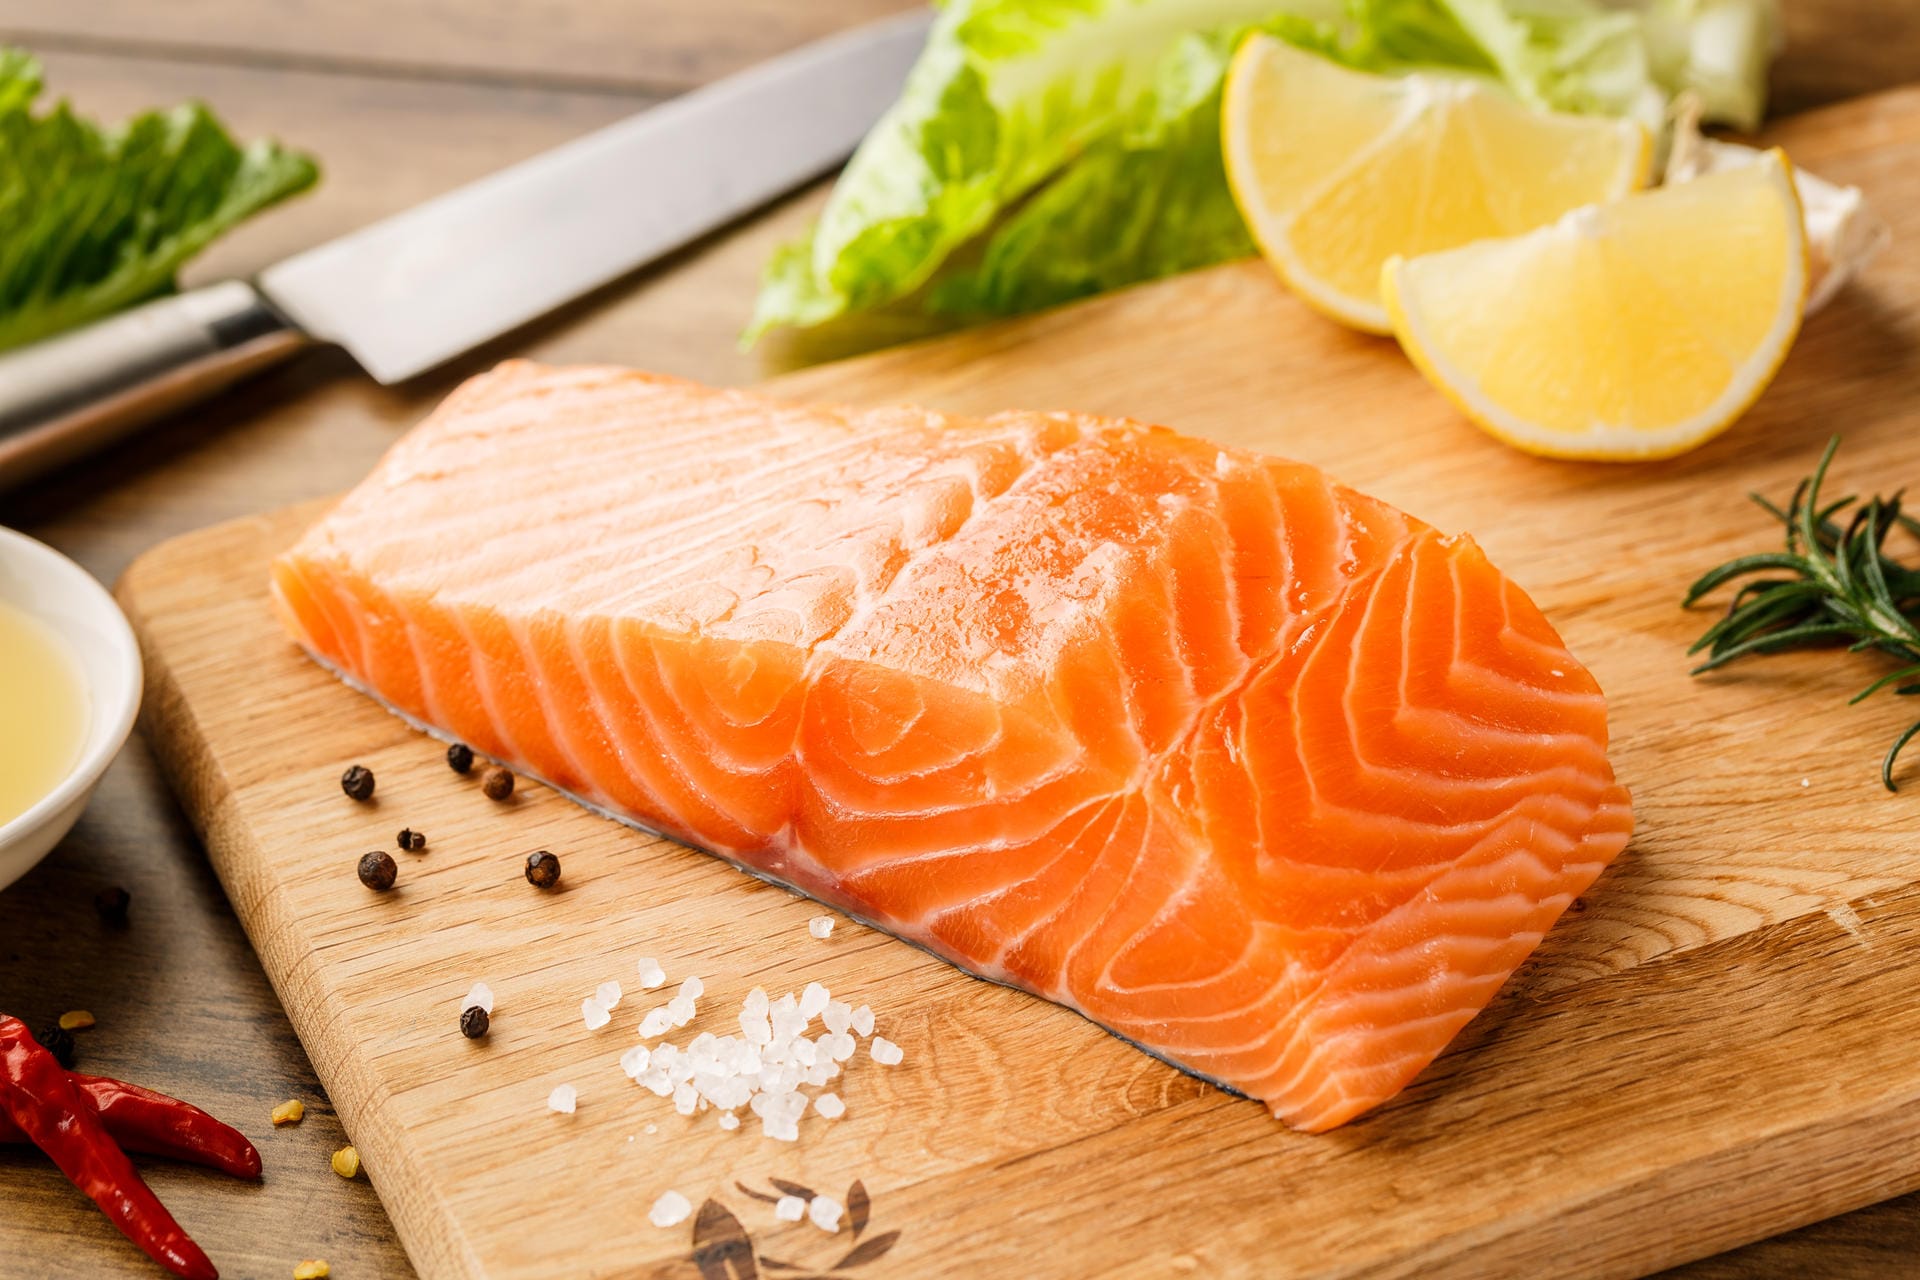 Wildlachs: Er ist einer der besten Lieferanten für die Herz schützenden Omega-3-Fettsäuren. Auch Eiweiß, B-Vitamine und Vitamin D sind reichlich enthalten. Alternativ kann man zu anderen Kaltwasserfischen wie Heilbutt, Thunfisch, Sardinen oder Hering greifen.